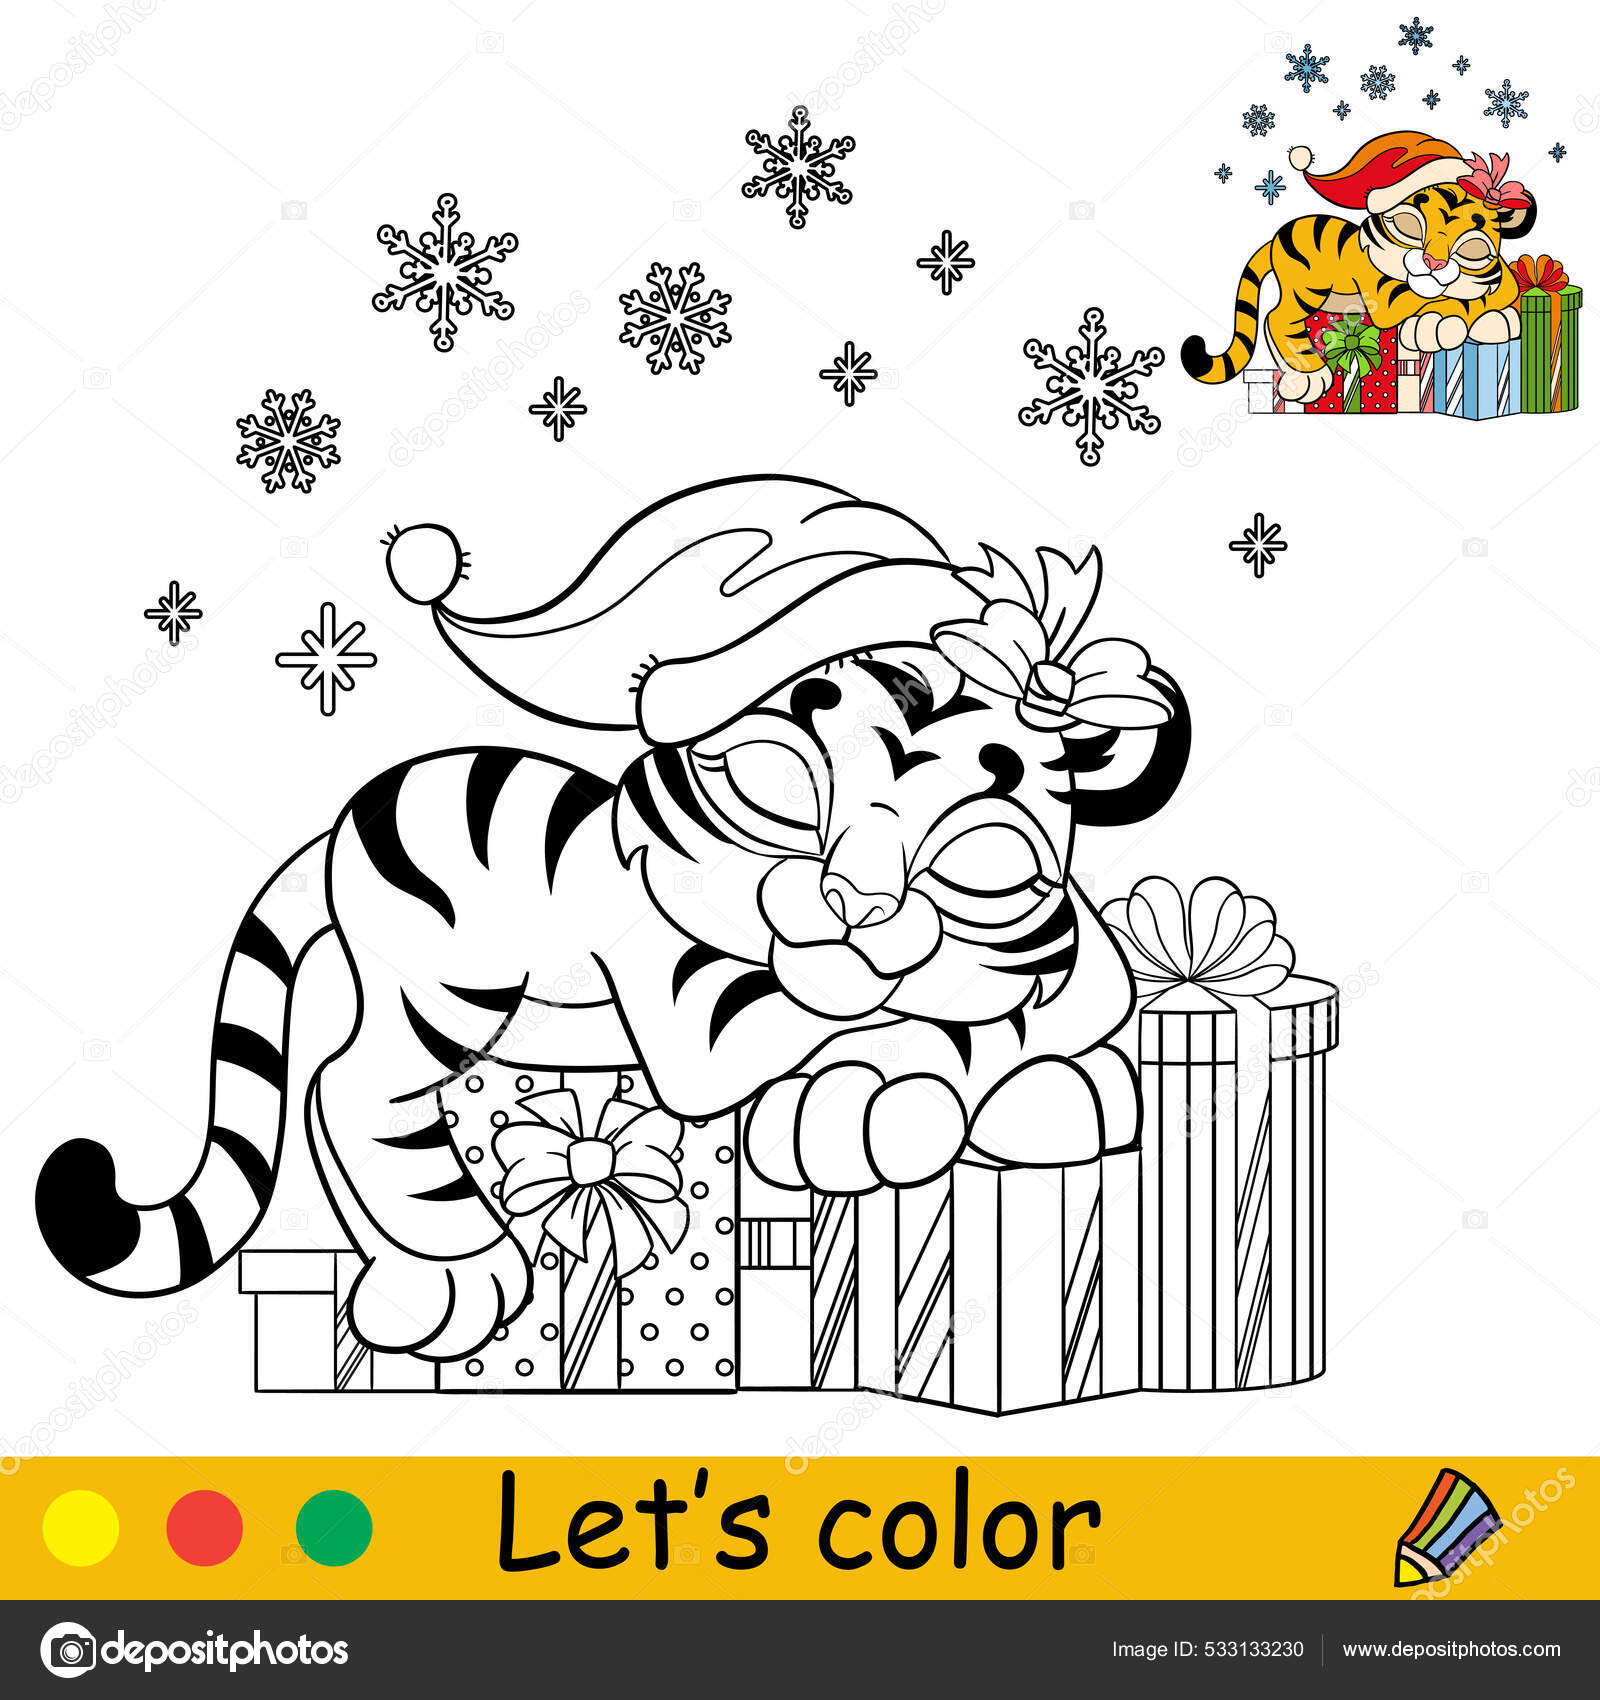 Gato de desenho animado e cabeça de sereia para colorir